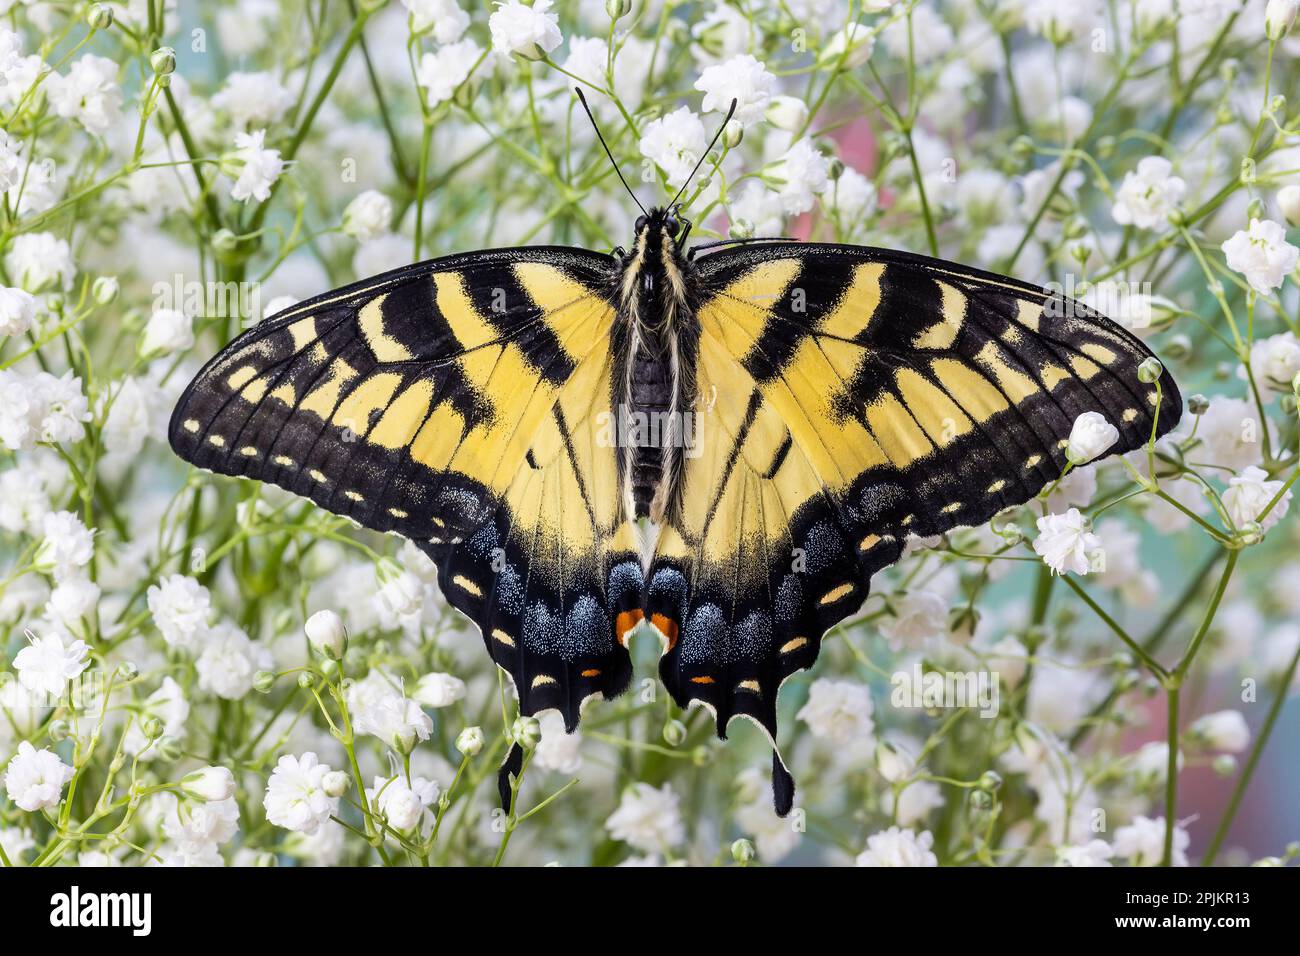 Stati Uniti, Washington state, Sammamish. Farfalla di coda di rondine della tigre orientale Foto Stock